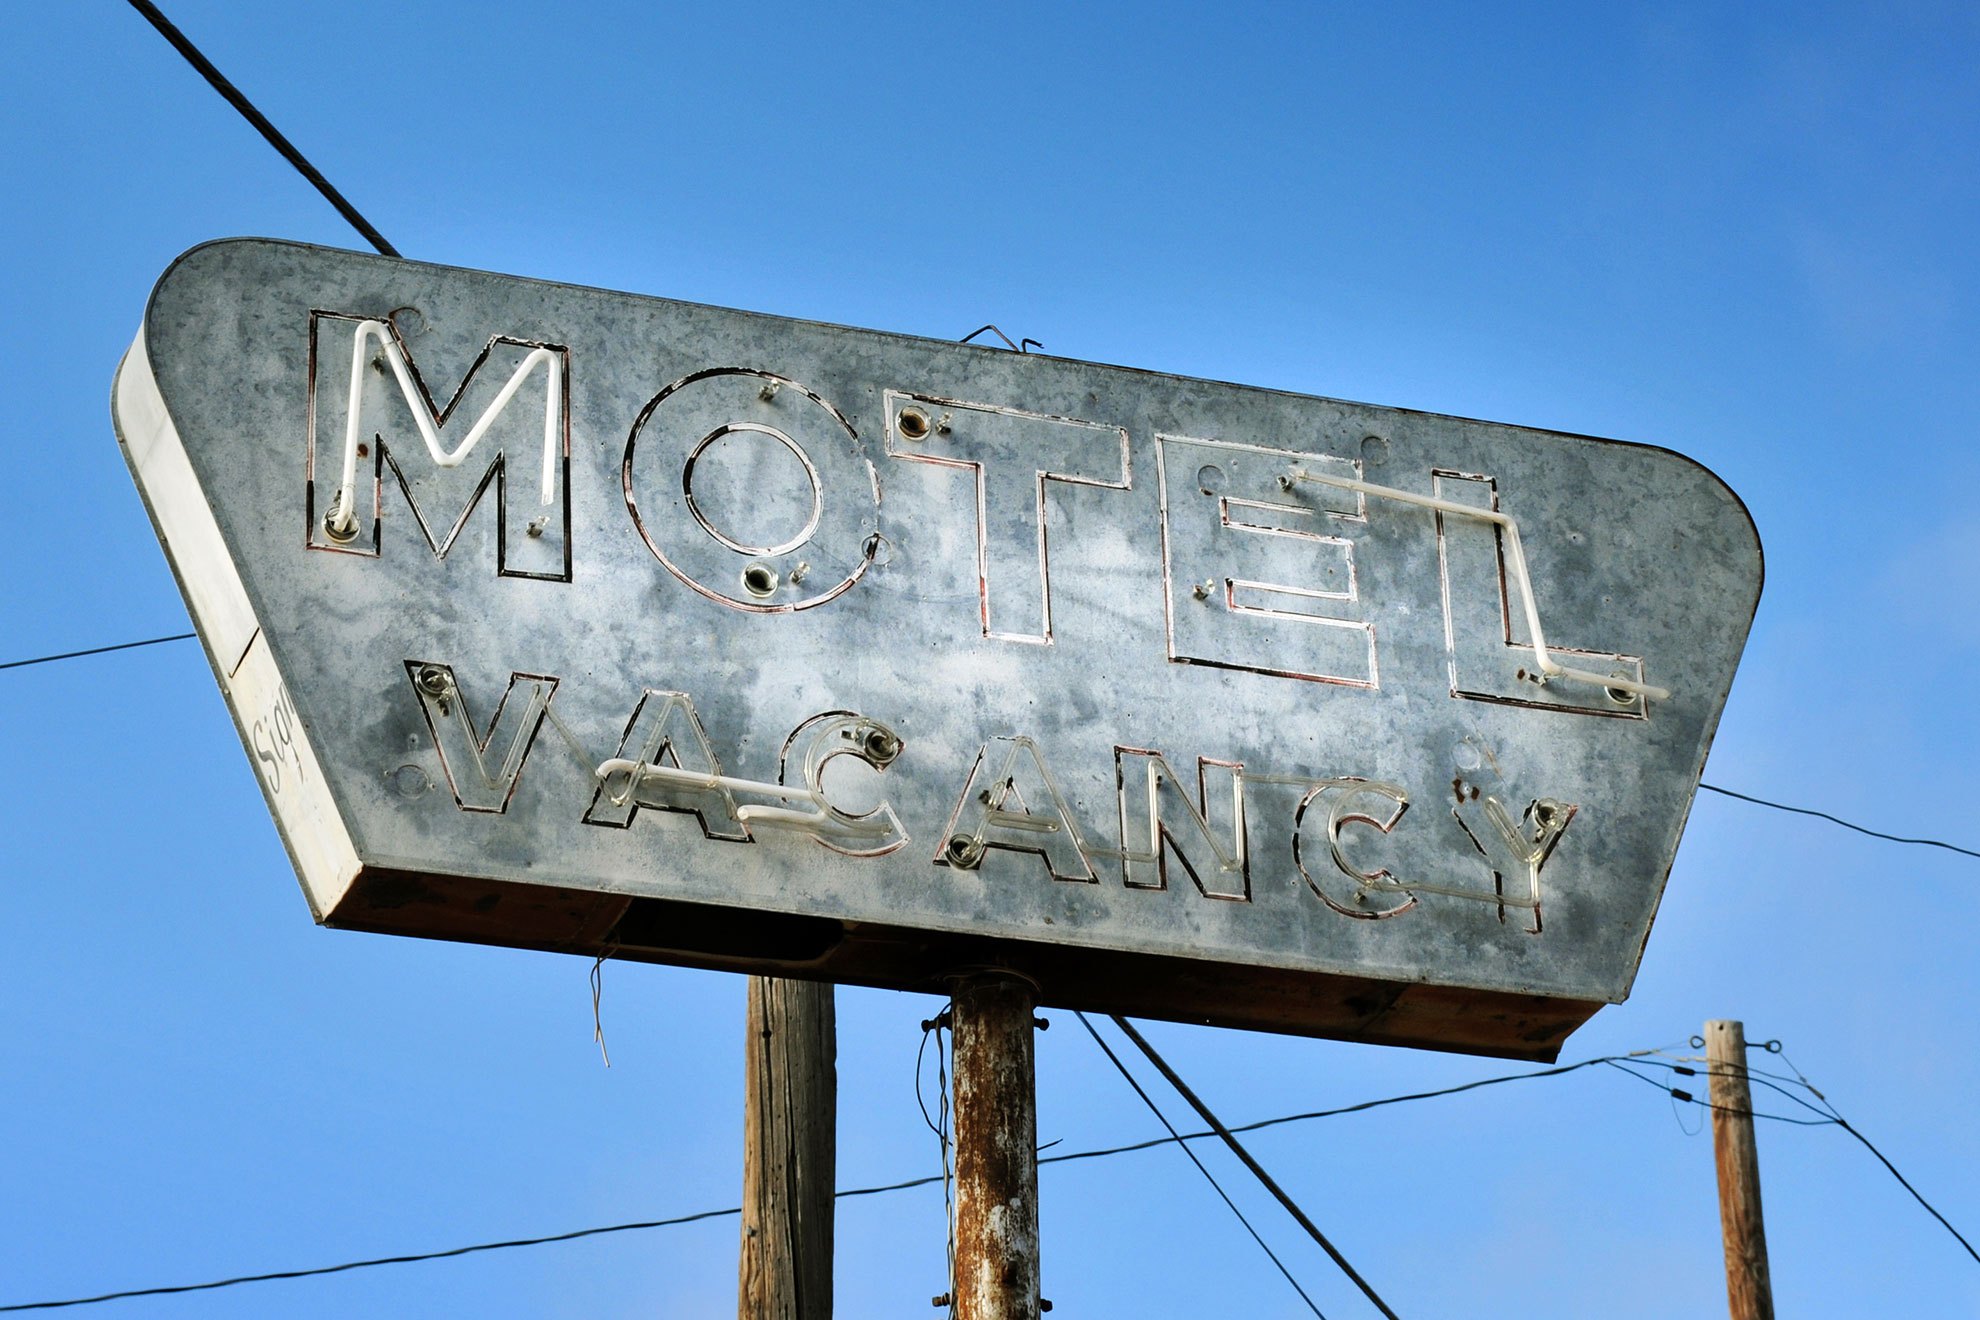 Szyld motelu w stylu vintage, ilustracja do artykułu wyjaśniającego różnicę motelu od hotelu